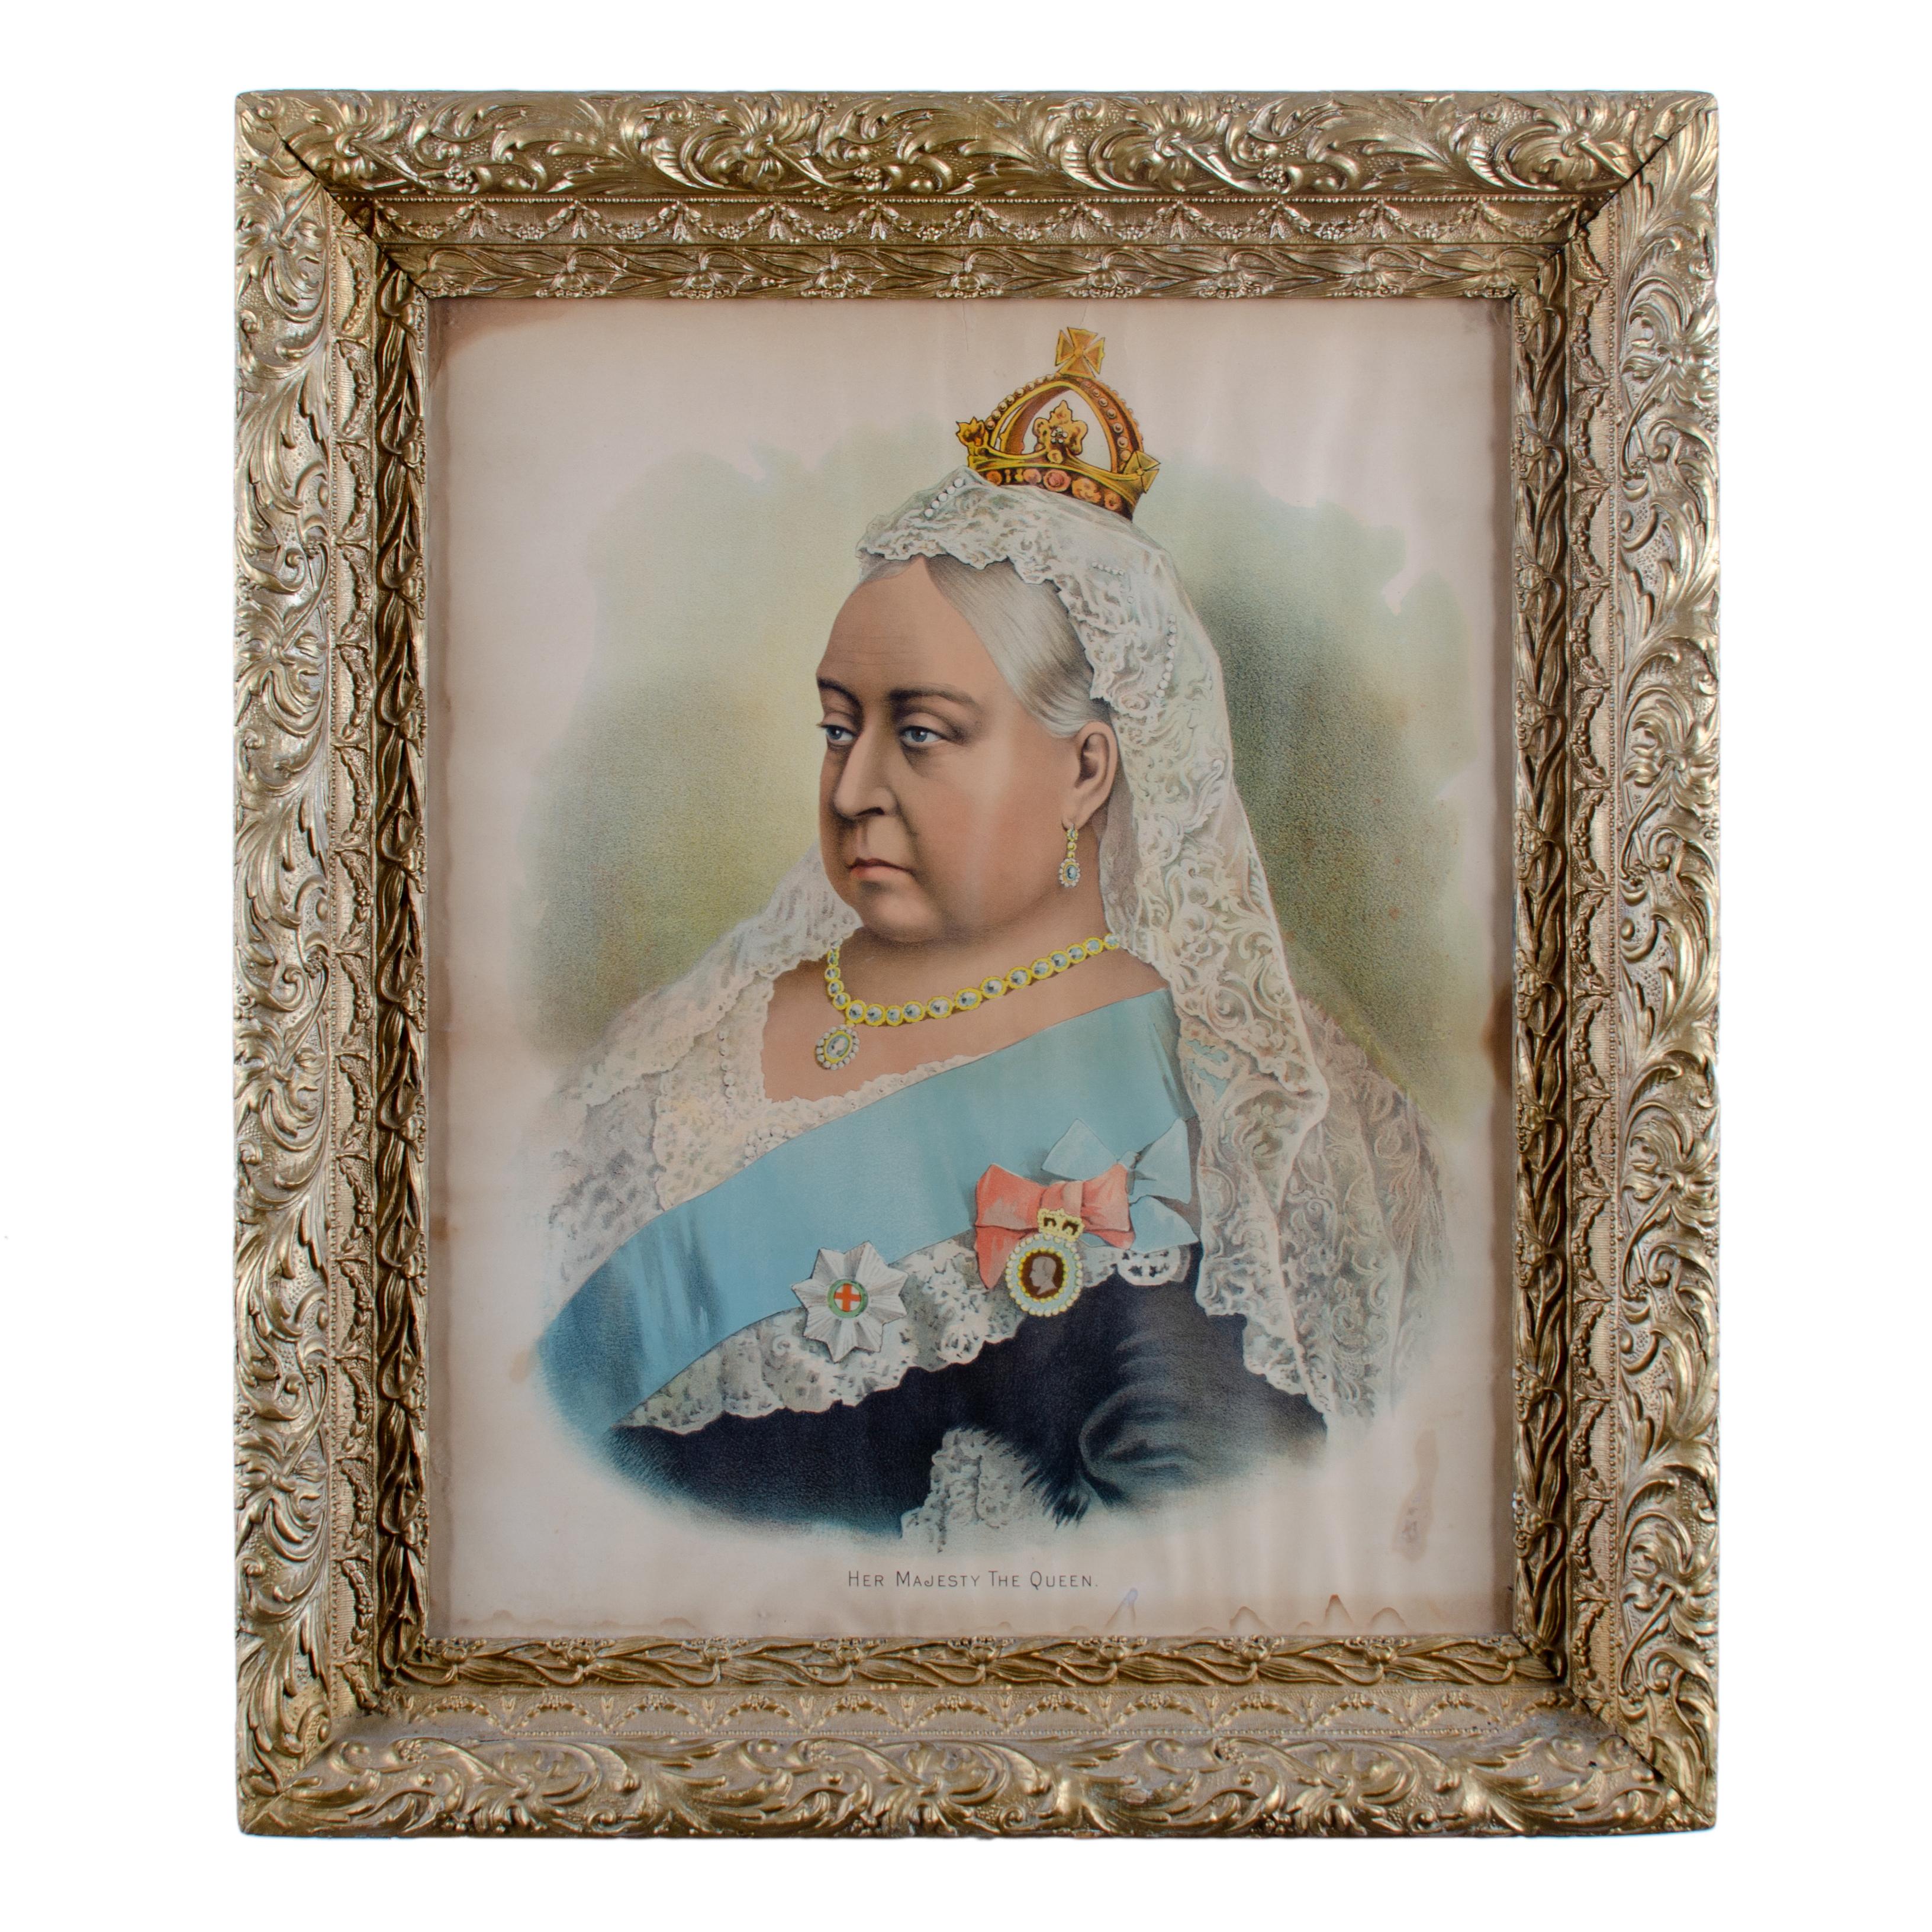 Rare lithographie d'un portrait de la Reine Victoria dans ses dernières années, intitulée 